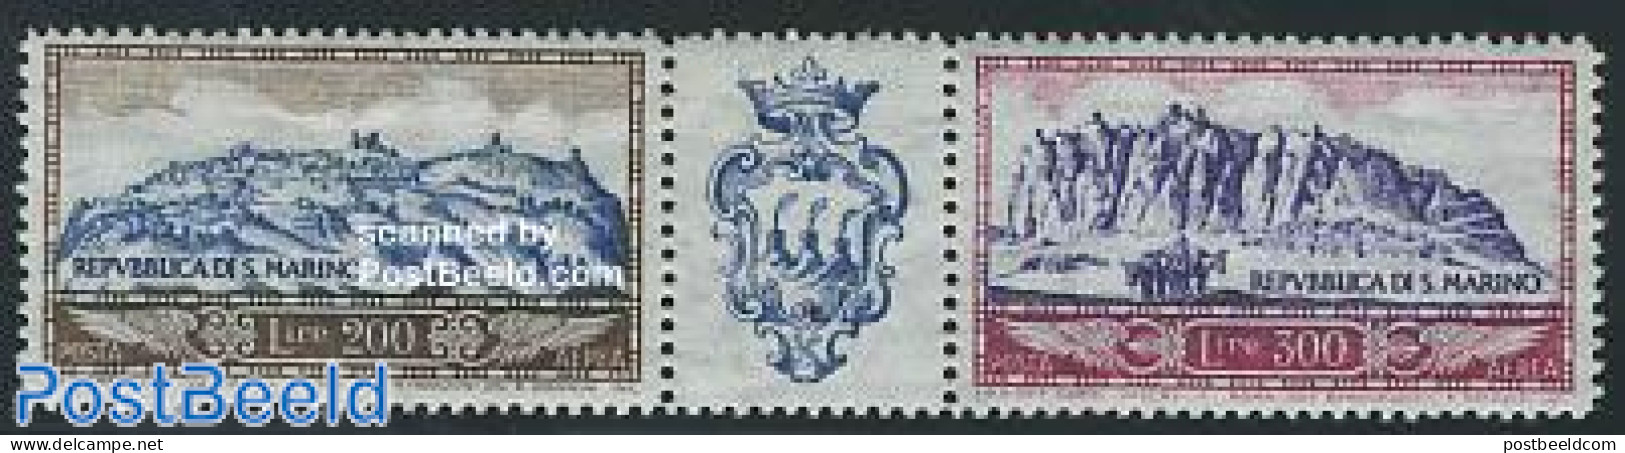 San Marino 1958 Airmail 2v+tab [:T:], Mint NH - Nuovi